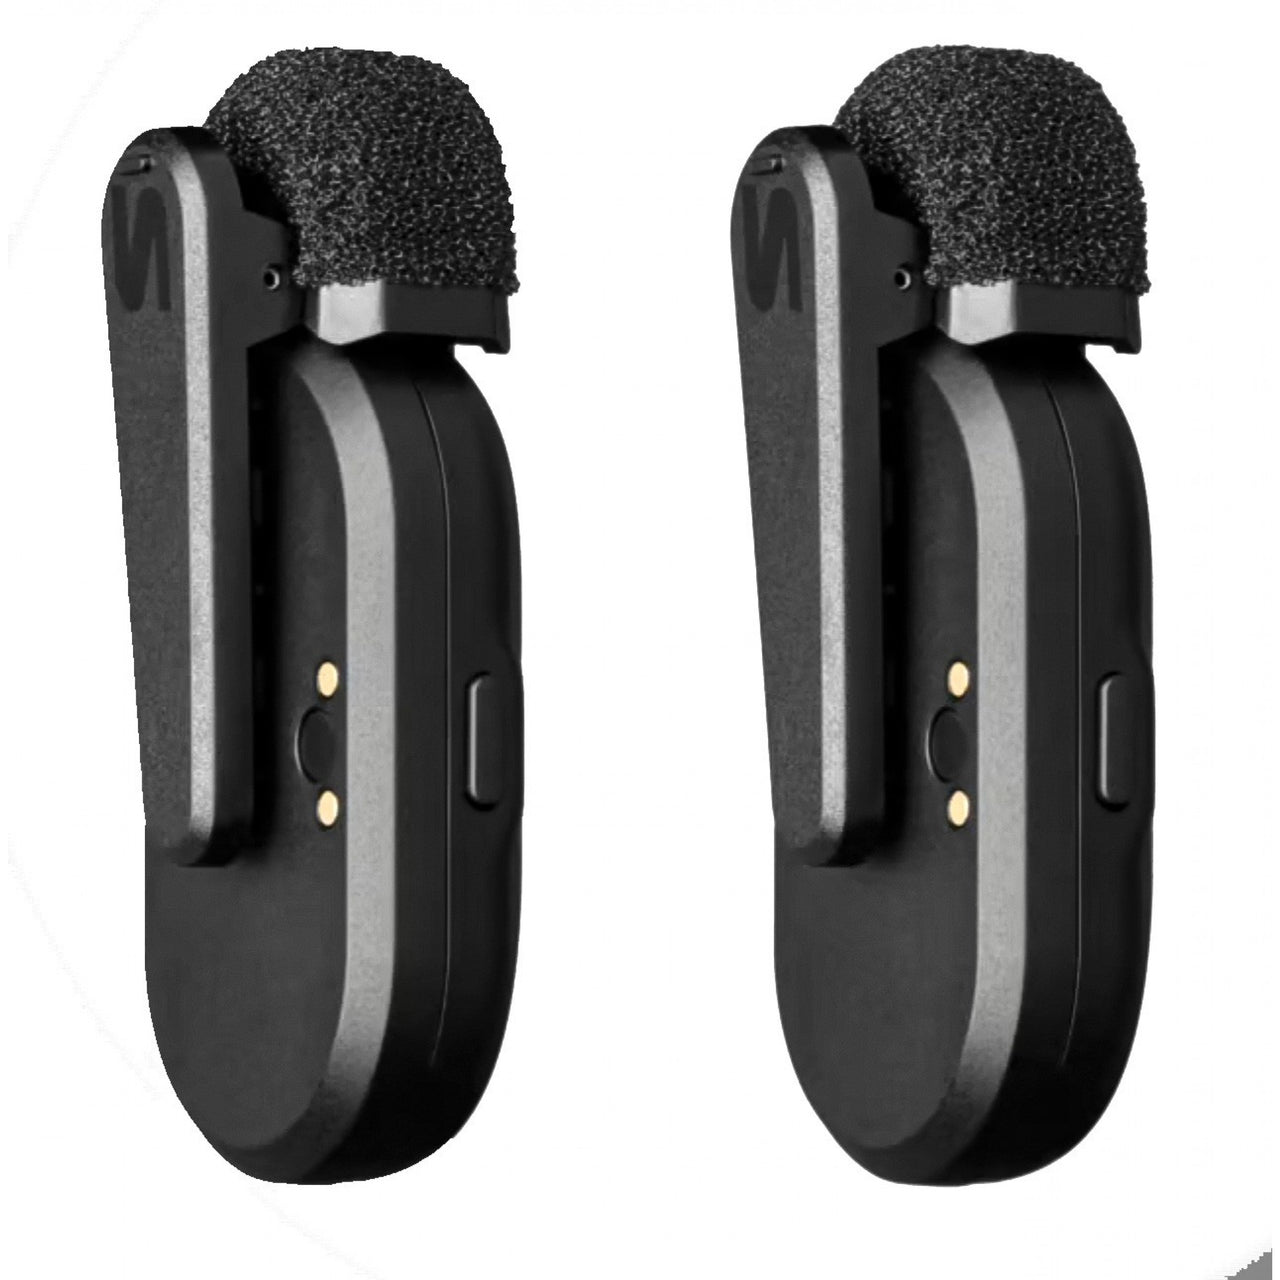 Microfono Shure Mv-two-z7 Inalambrico Doble Miniatura Con Bluetooth